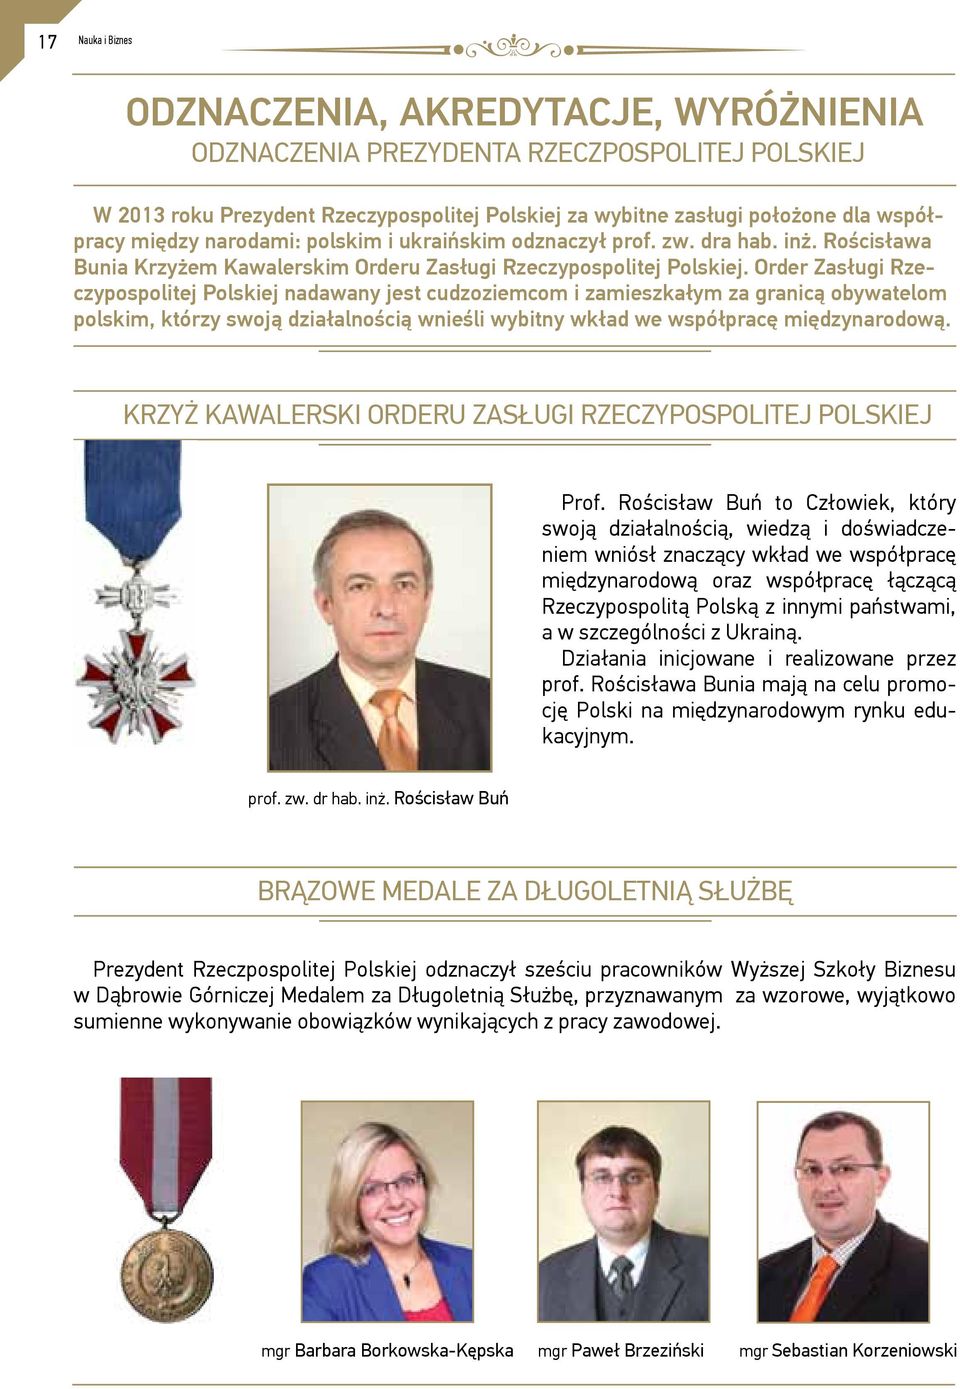 Order Zasługi Rzeczypospolitej Polskiej nadawany jest cudzoziemcom i zamieszkałym za granicą obywatelom polskim, którzy swoją działalnością wnieśli wybitny wkład we współpracę międzynarodową.